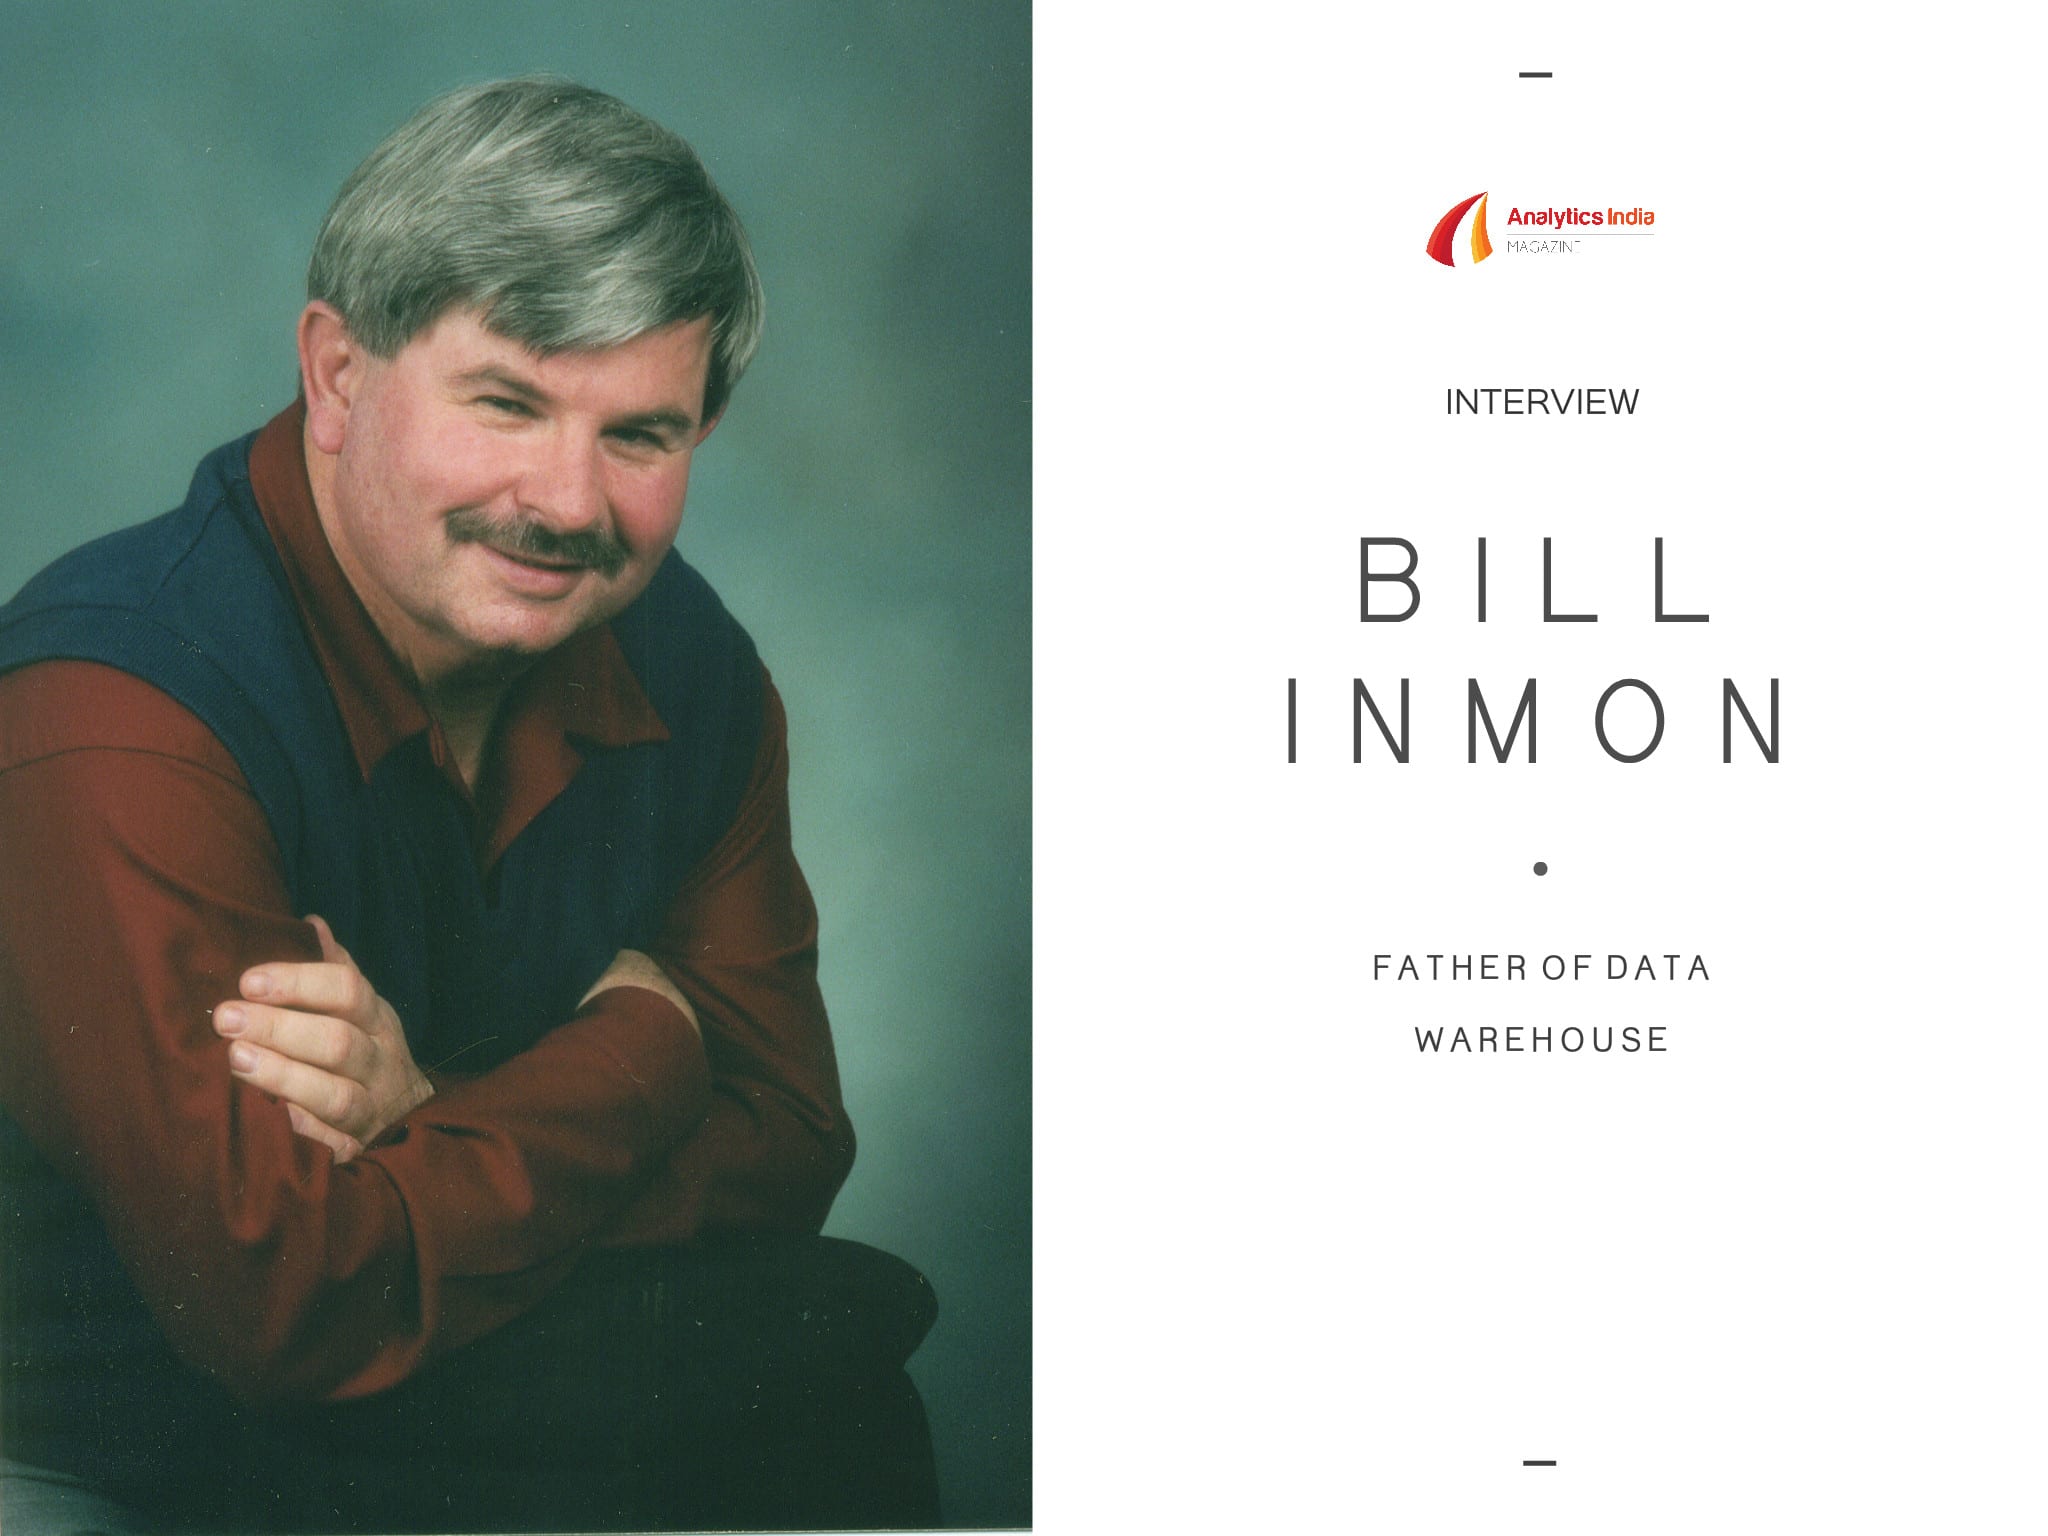 BILL INMON